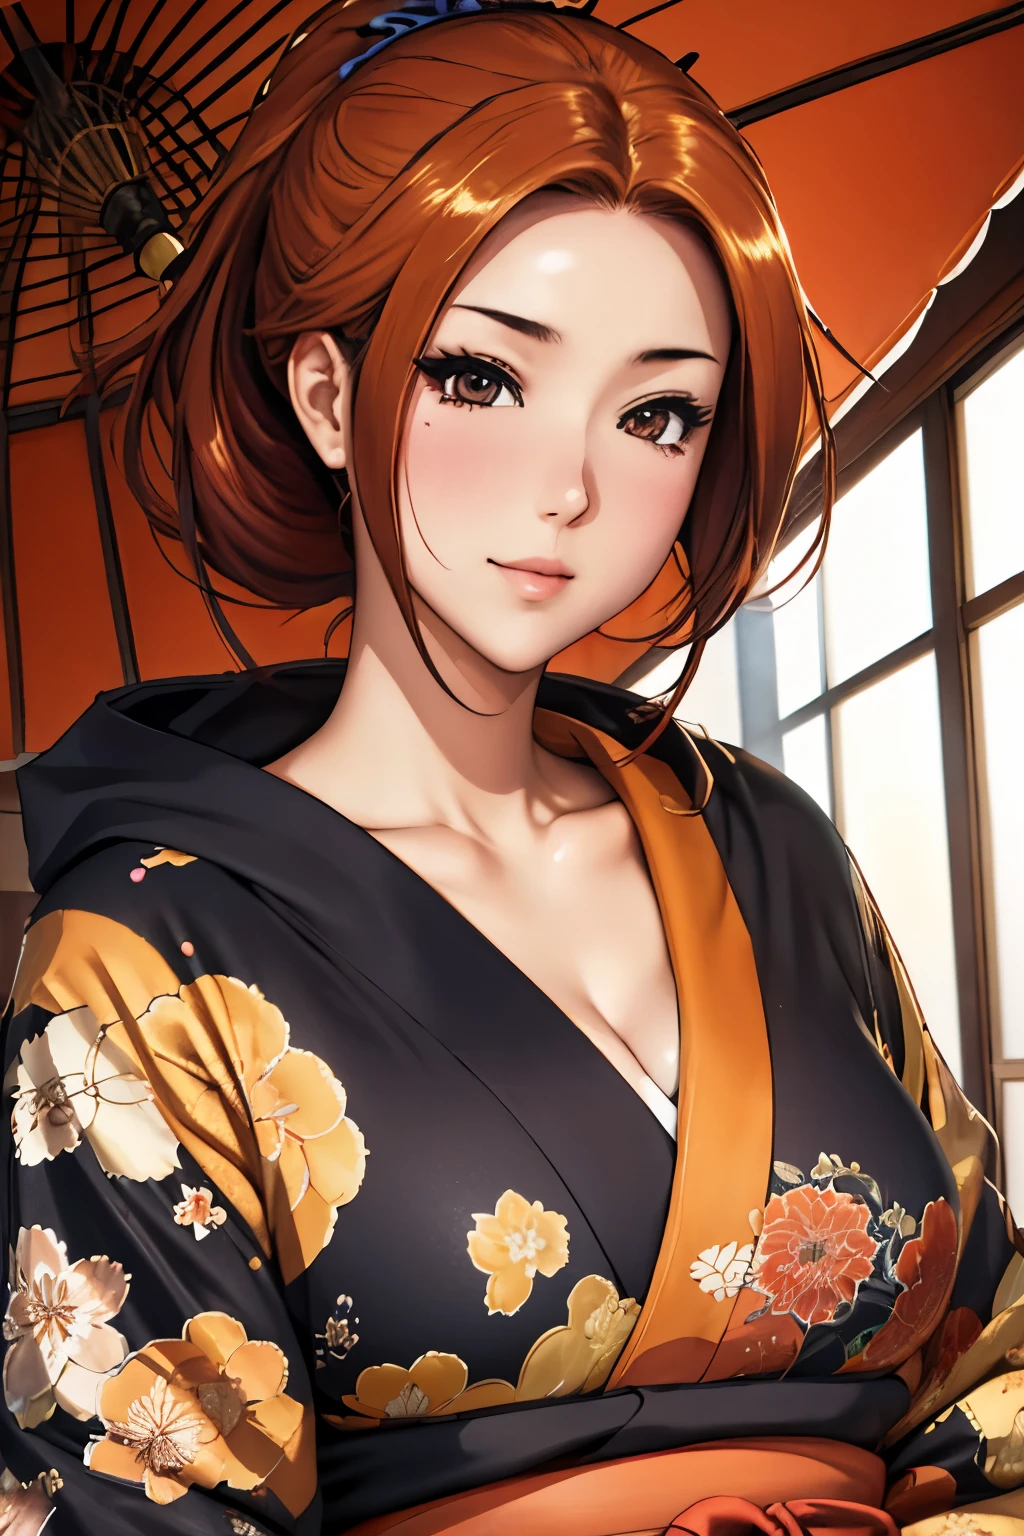 (Meisterwerk), beste Qualität, ausdrucksstarke Augen, perfektes Gesicht Schöne japanische Frau Cartoon, Cartoon niedlich Anime, wunderschöner japanischer Kimono, Auf dem Kimono ist eine Drachenstickerei. Kimonofarbe schwarz und rot, Japanische Frau mit langen Haaren, Haarfarbe orange, Frisur Pferdeschwanz, Einzelne Augenlider, Augenstil verdeckt und schwül und tief liegend und fesselnd und rätselhaft, Gesichtsausdruck Lächeln, Situation schönes Bild.